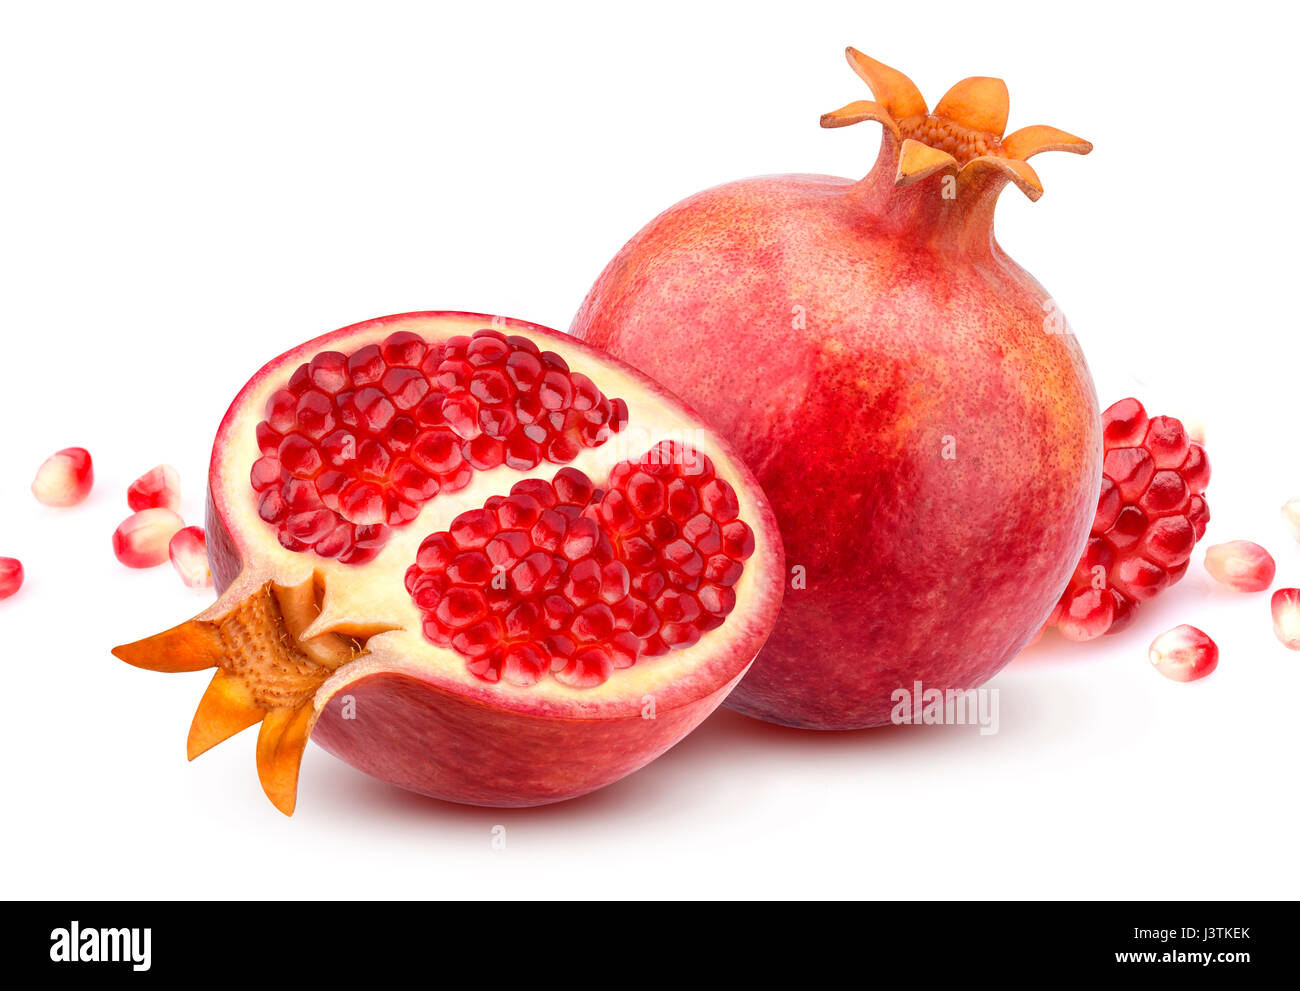 Pomegranate isolated on white background Stock Photo